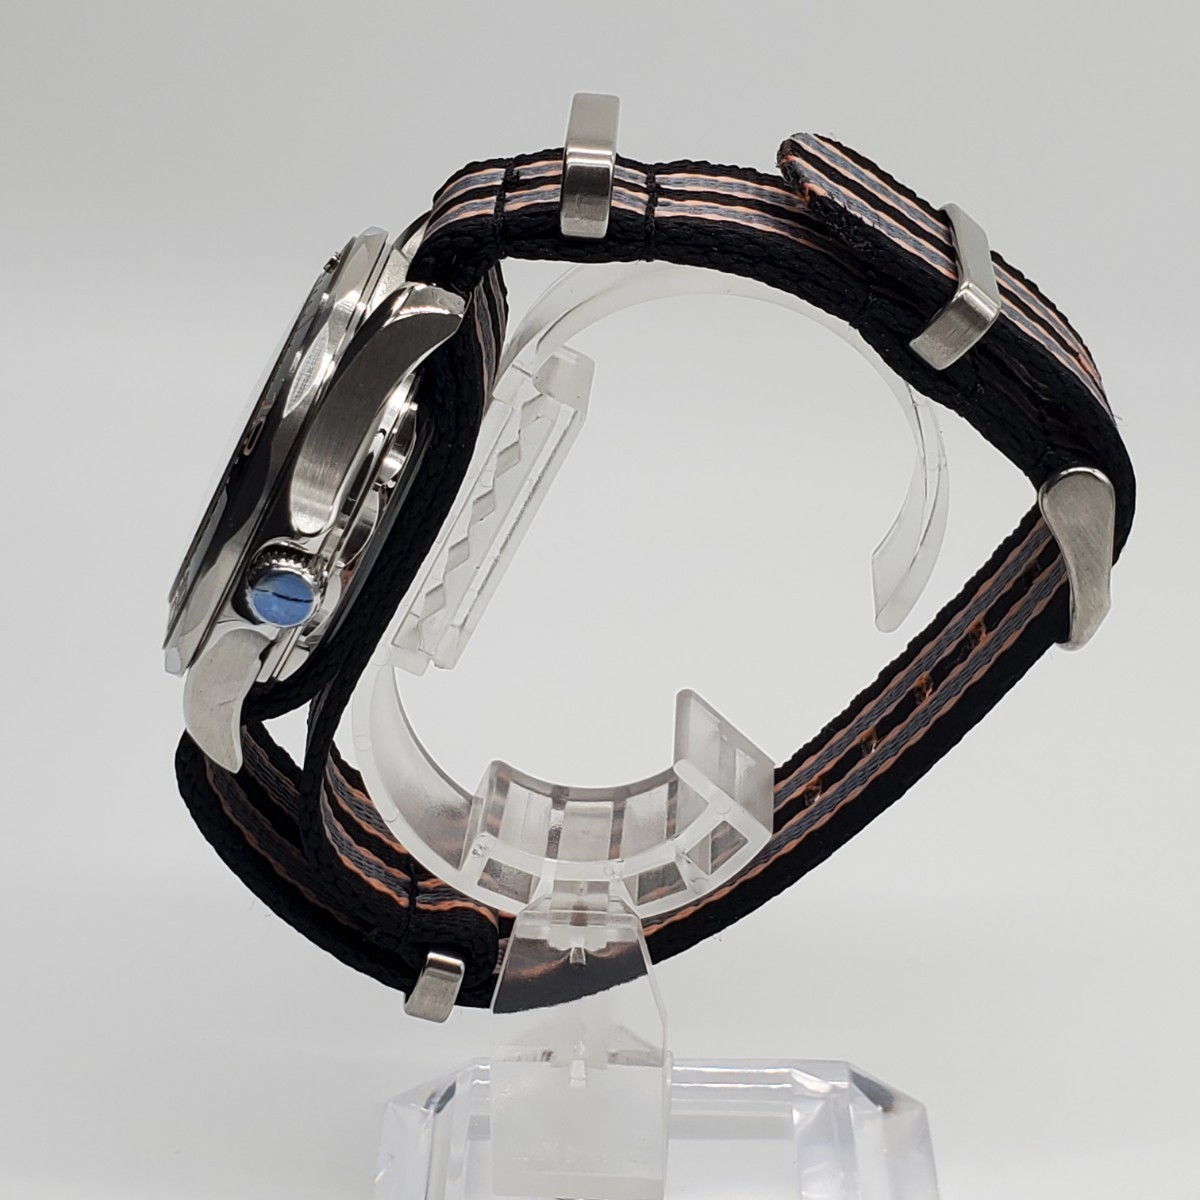 新品 BLIGER 自動巻 ノーロゴ ダイバーズデザイン メンズ腕時計 NH35 シースルーバック 回転ベゼル 機械式 ナイロンストラップ_画像3